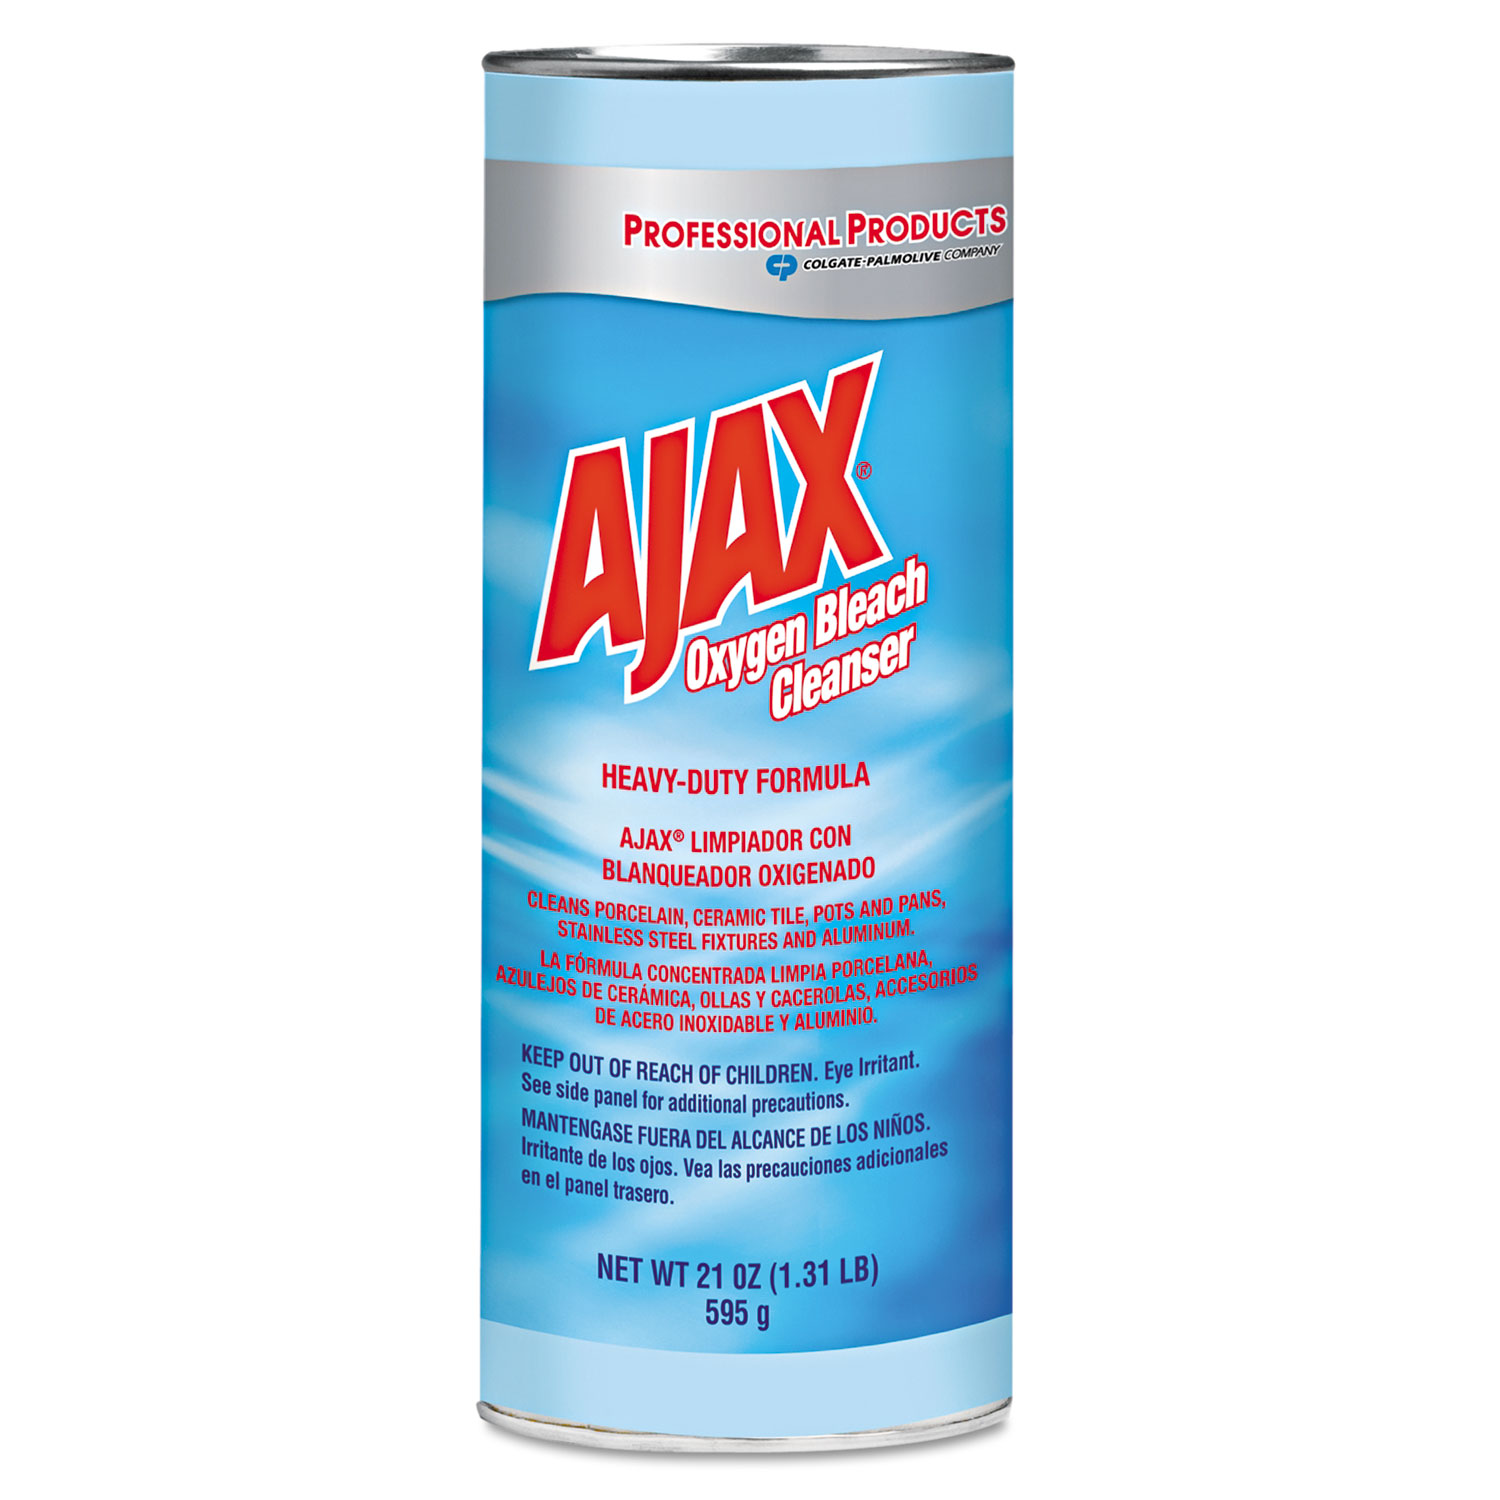 Ajax Oxygen Bleach Powder Cleanser - 21oz, 24/Case